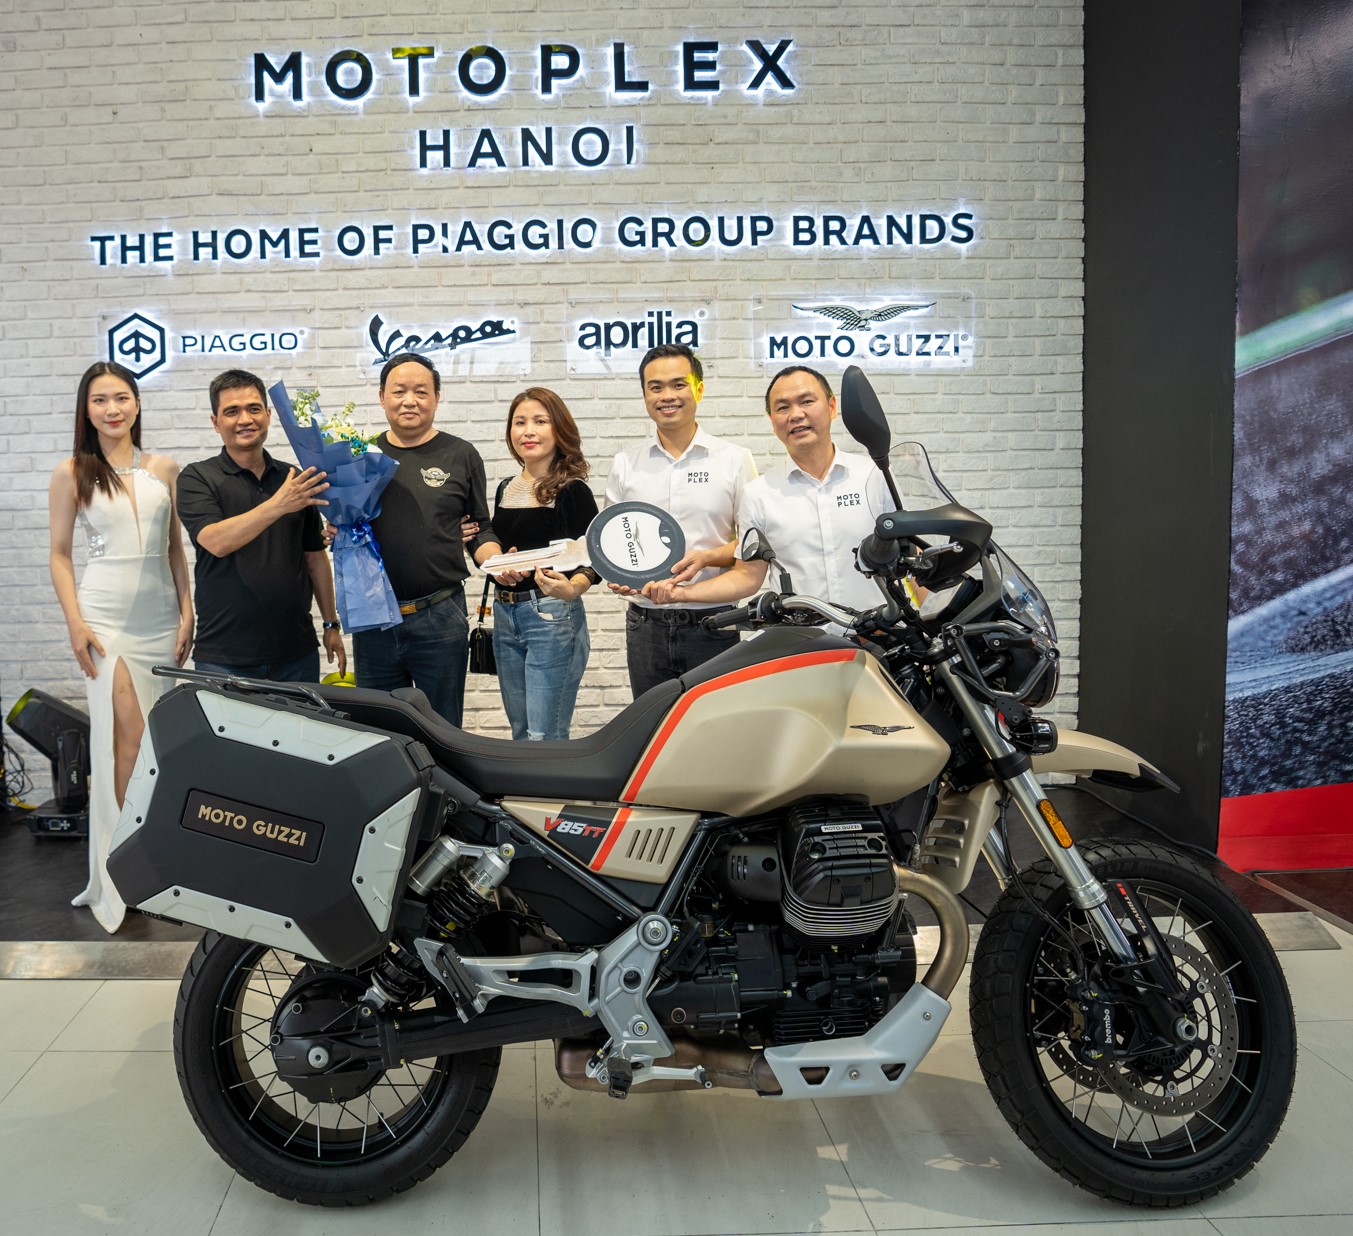 Piaggio khai trương showroom Motoplex tại Hà Nội